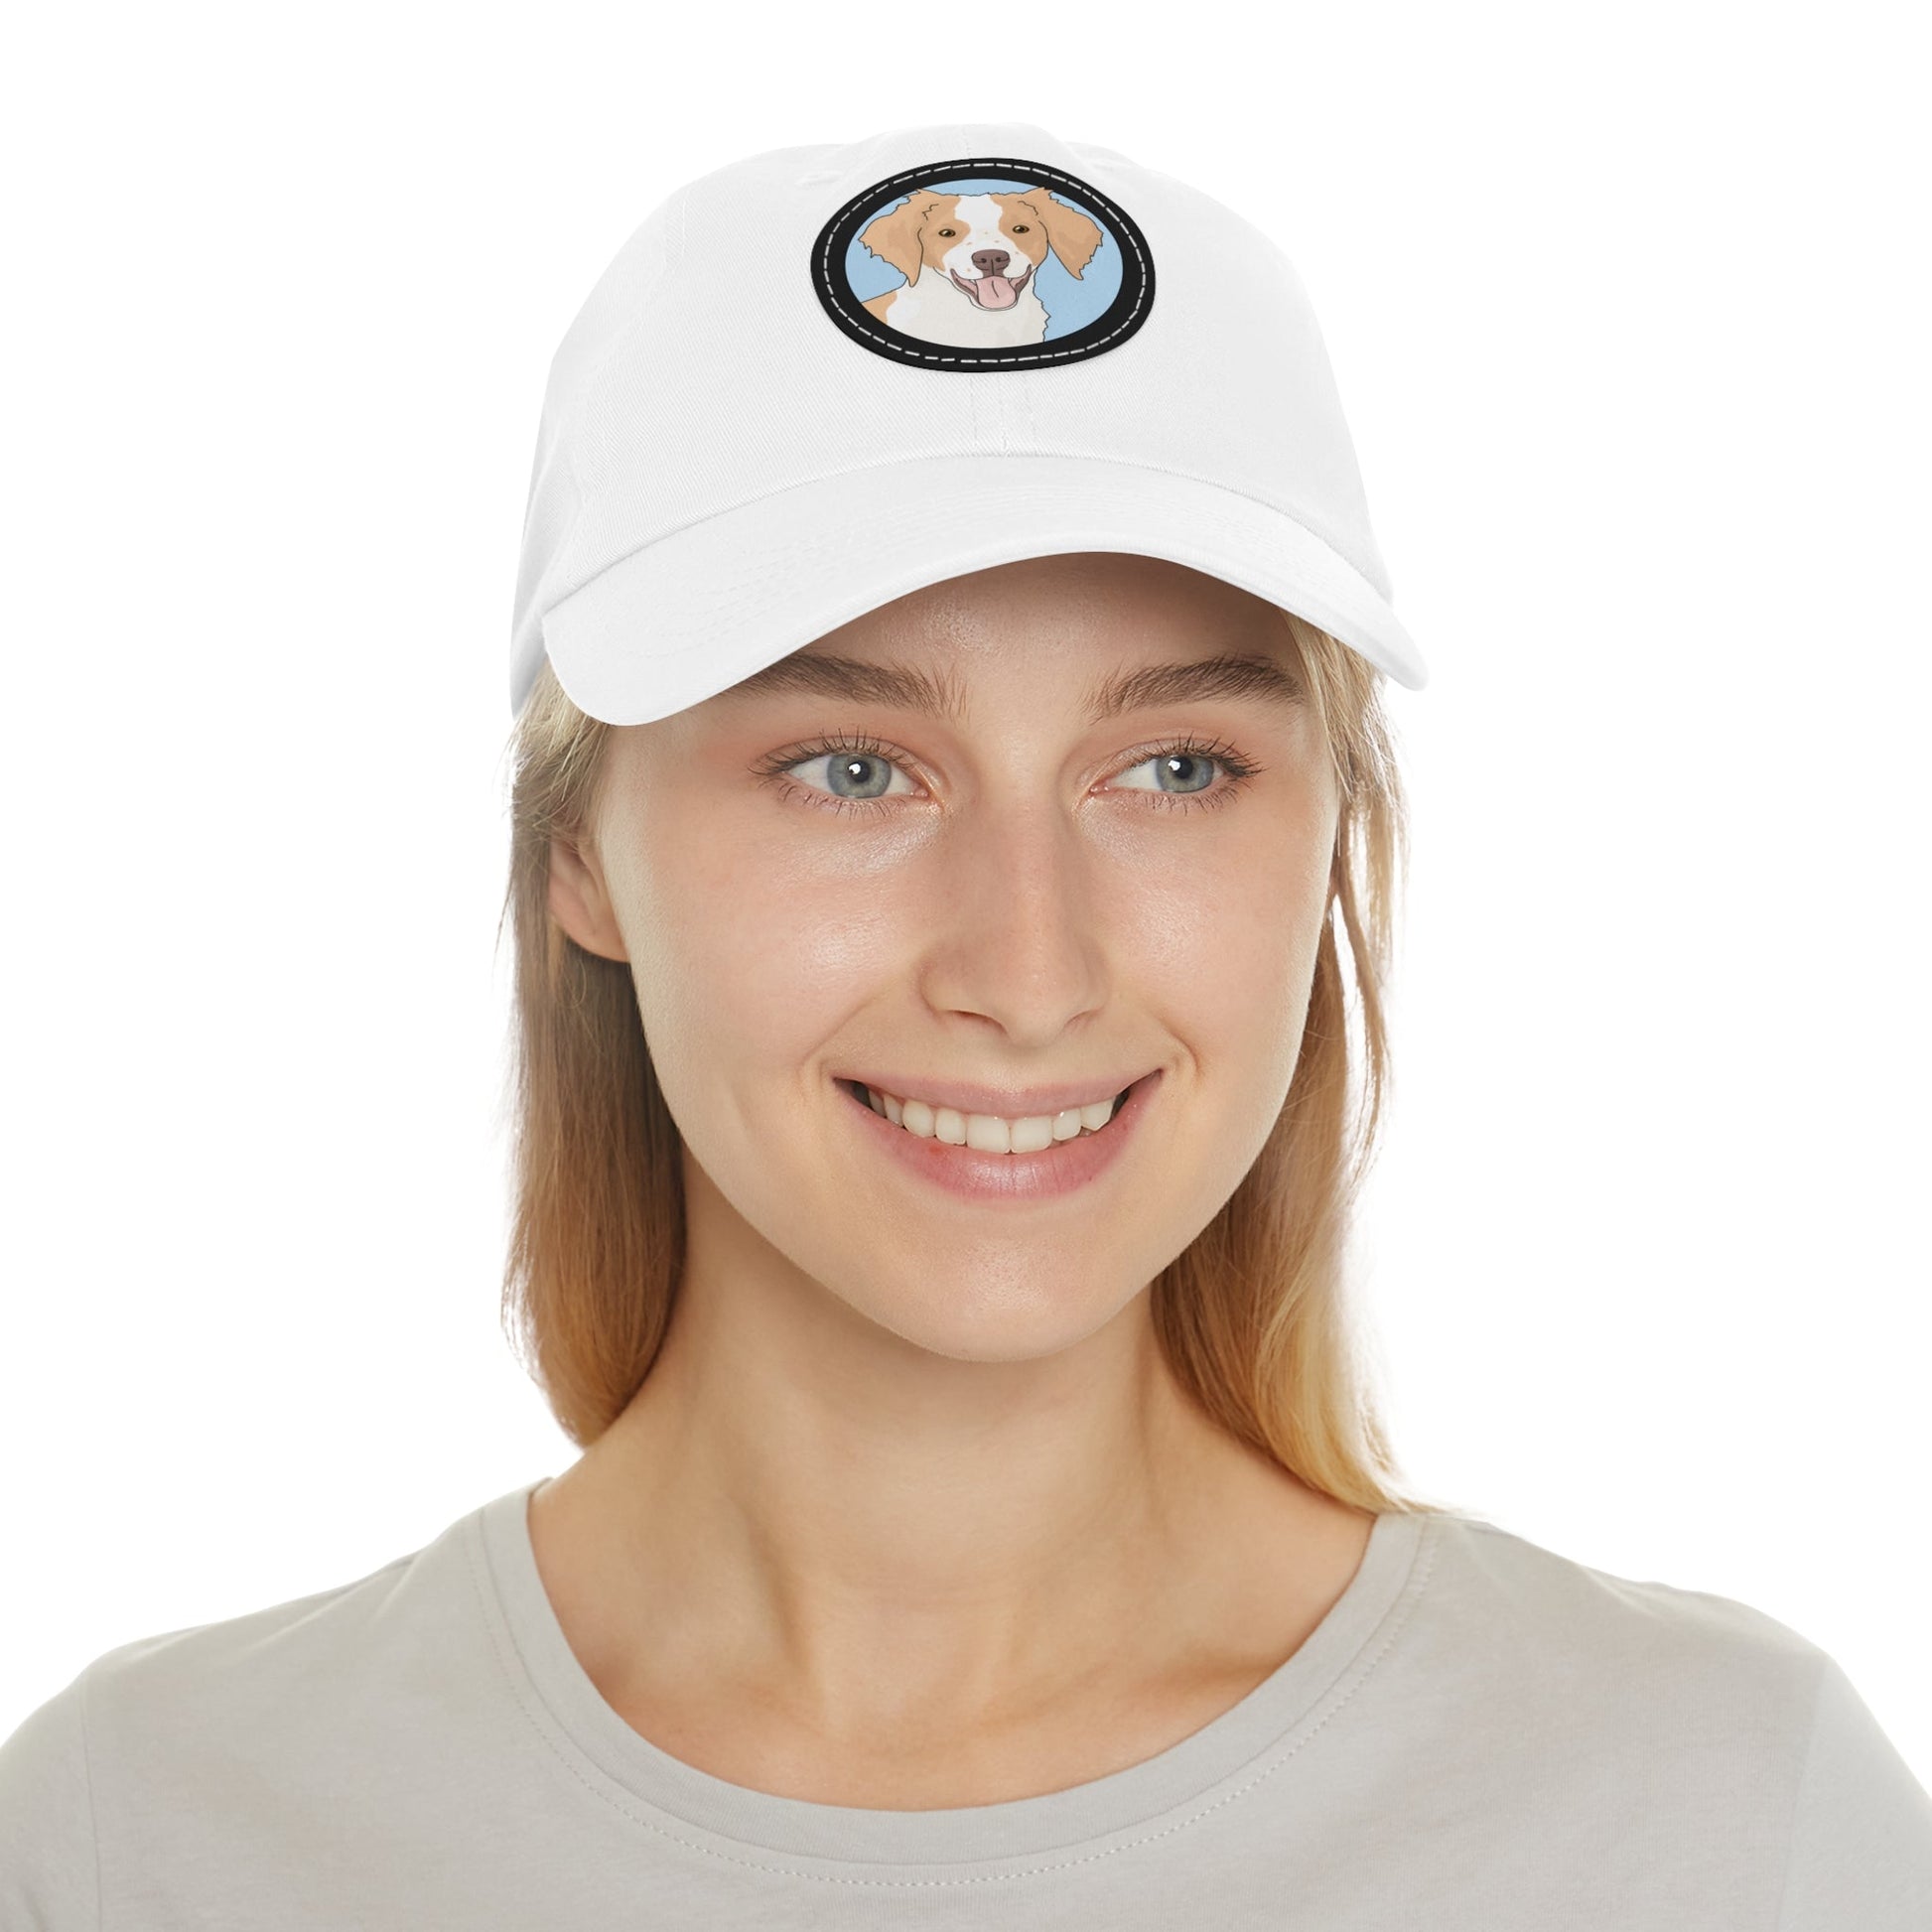 Brittany Spaniel | Dad Hat - Detezi Designs-10203113156405461573